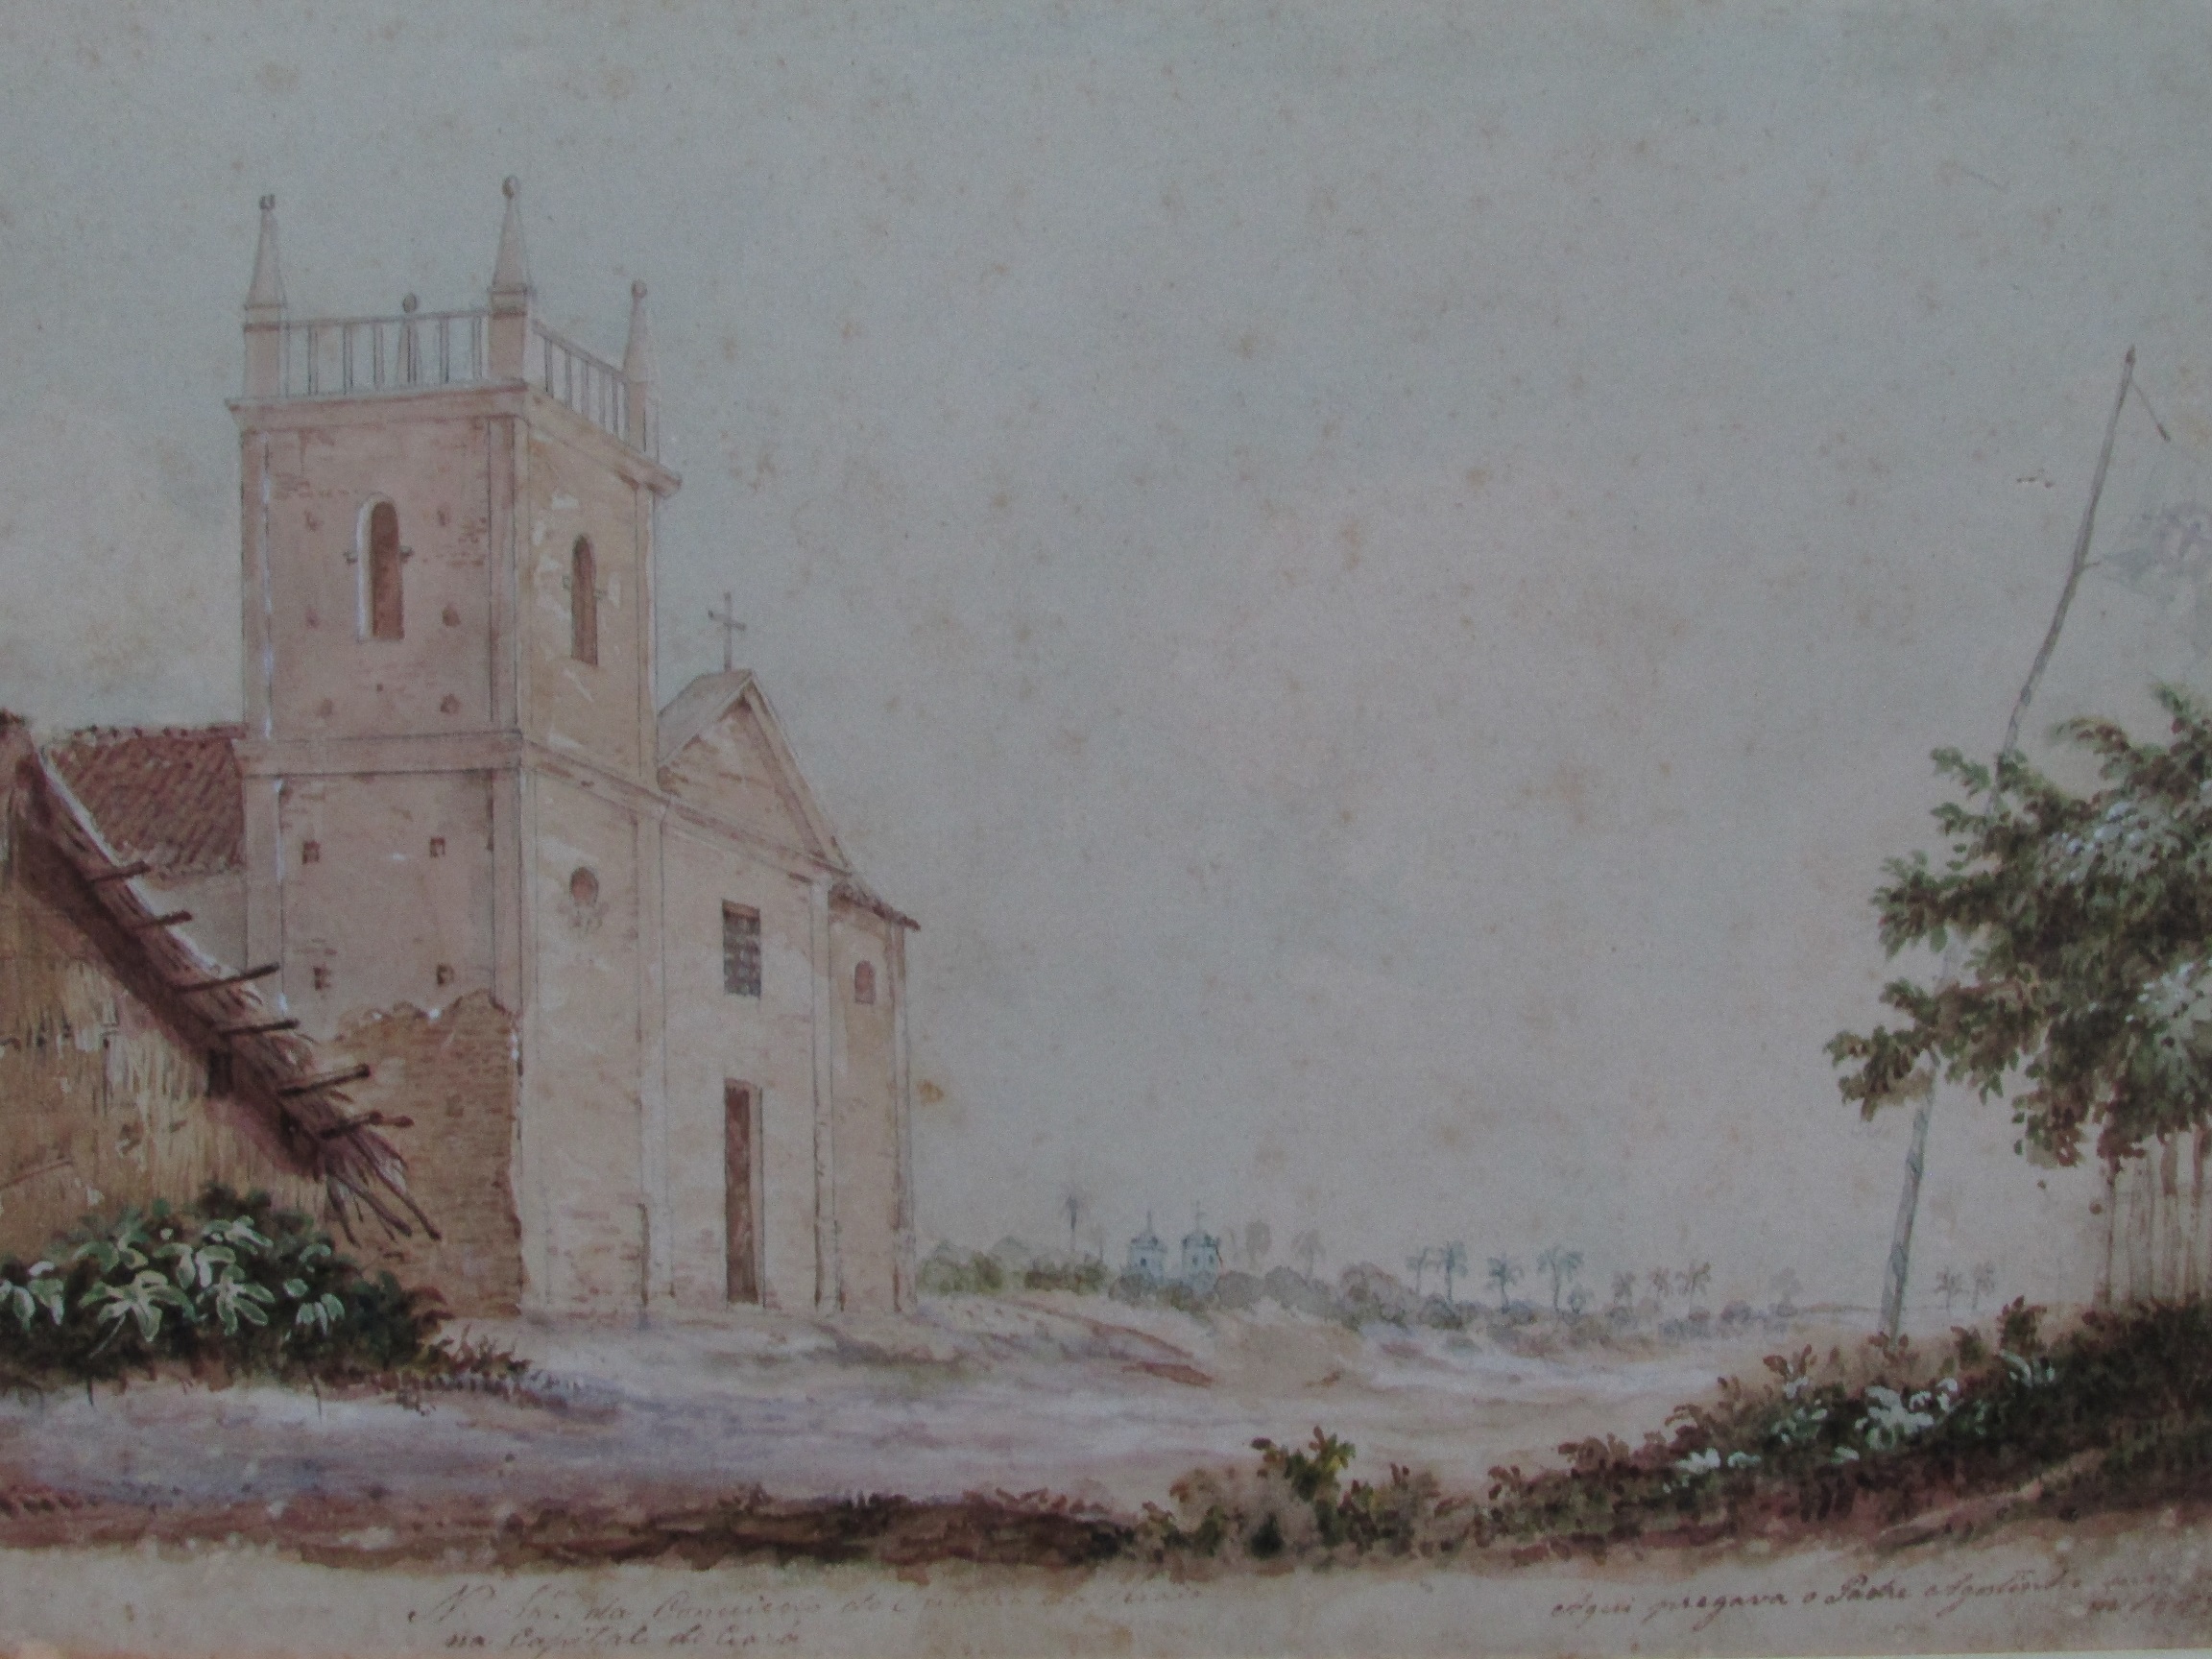 Aquarela de José Reis de Carvalho feita no Ceará (1859-1861)